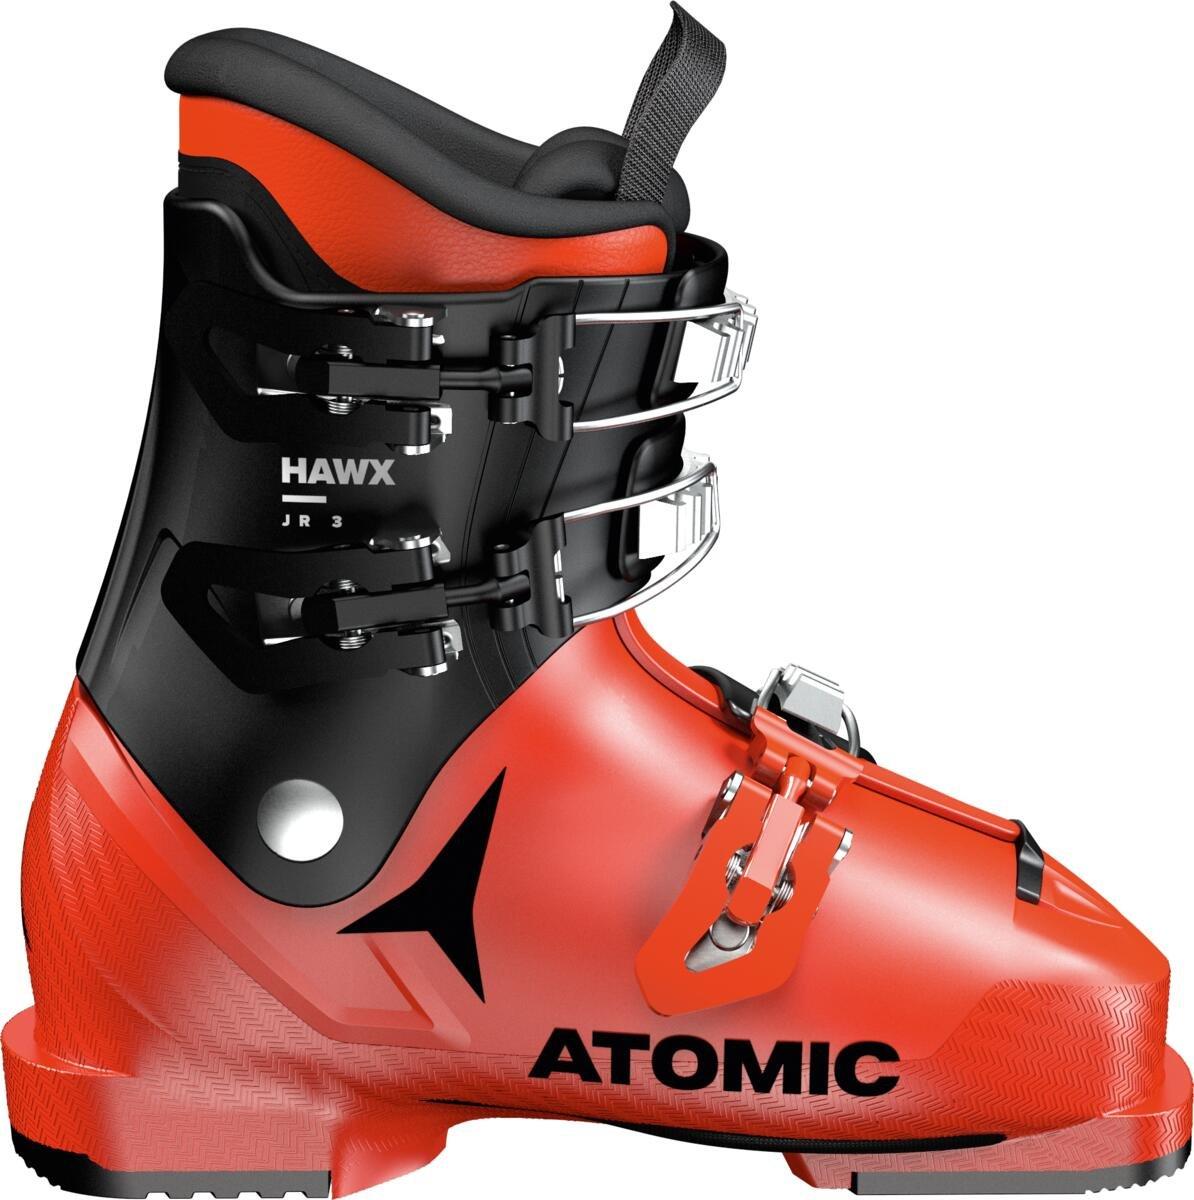 Detské lyžiarky Atomic Hawx 3 Junior Veľkosť: 22 cm